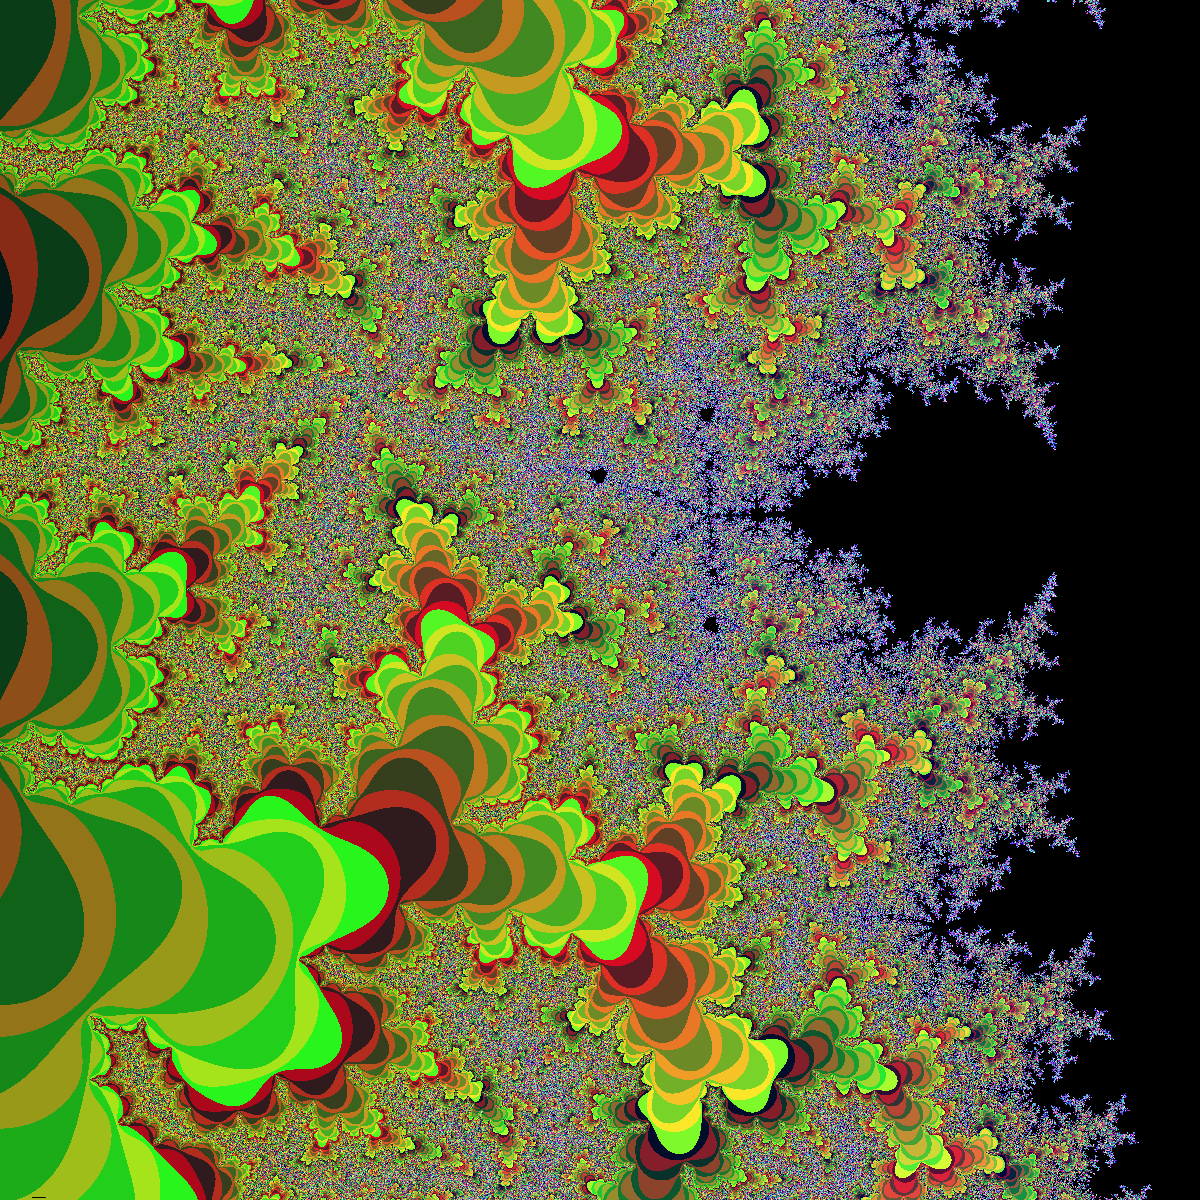 Mandelbrot set zoom in color band effect